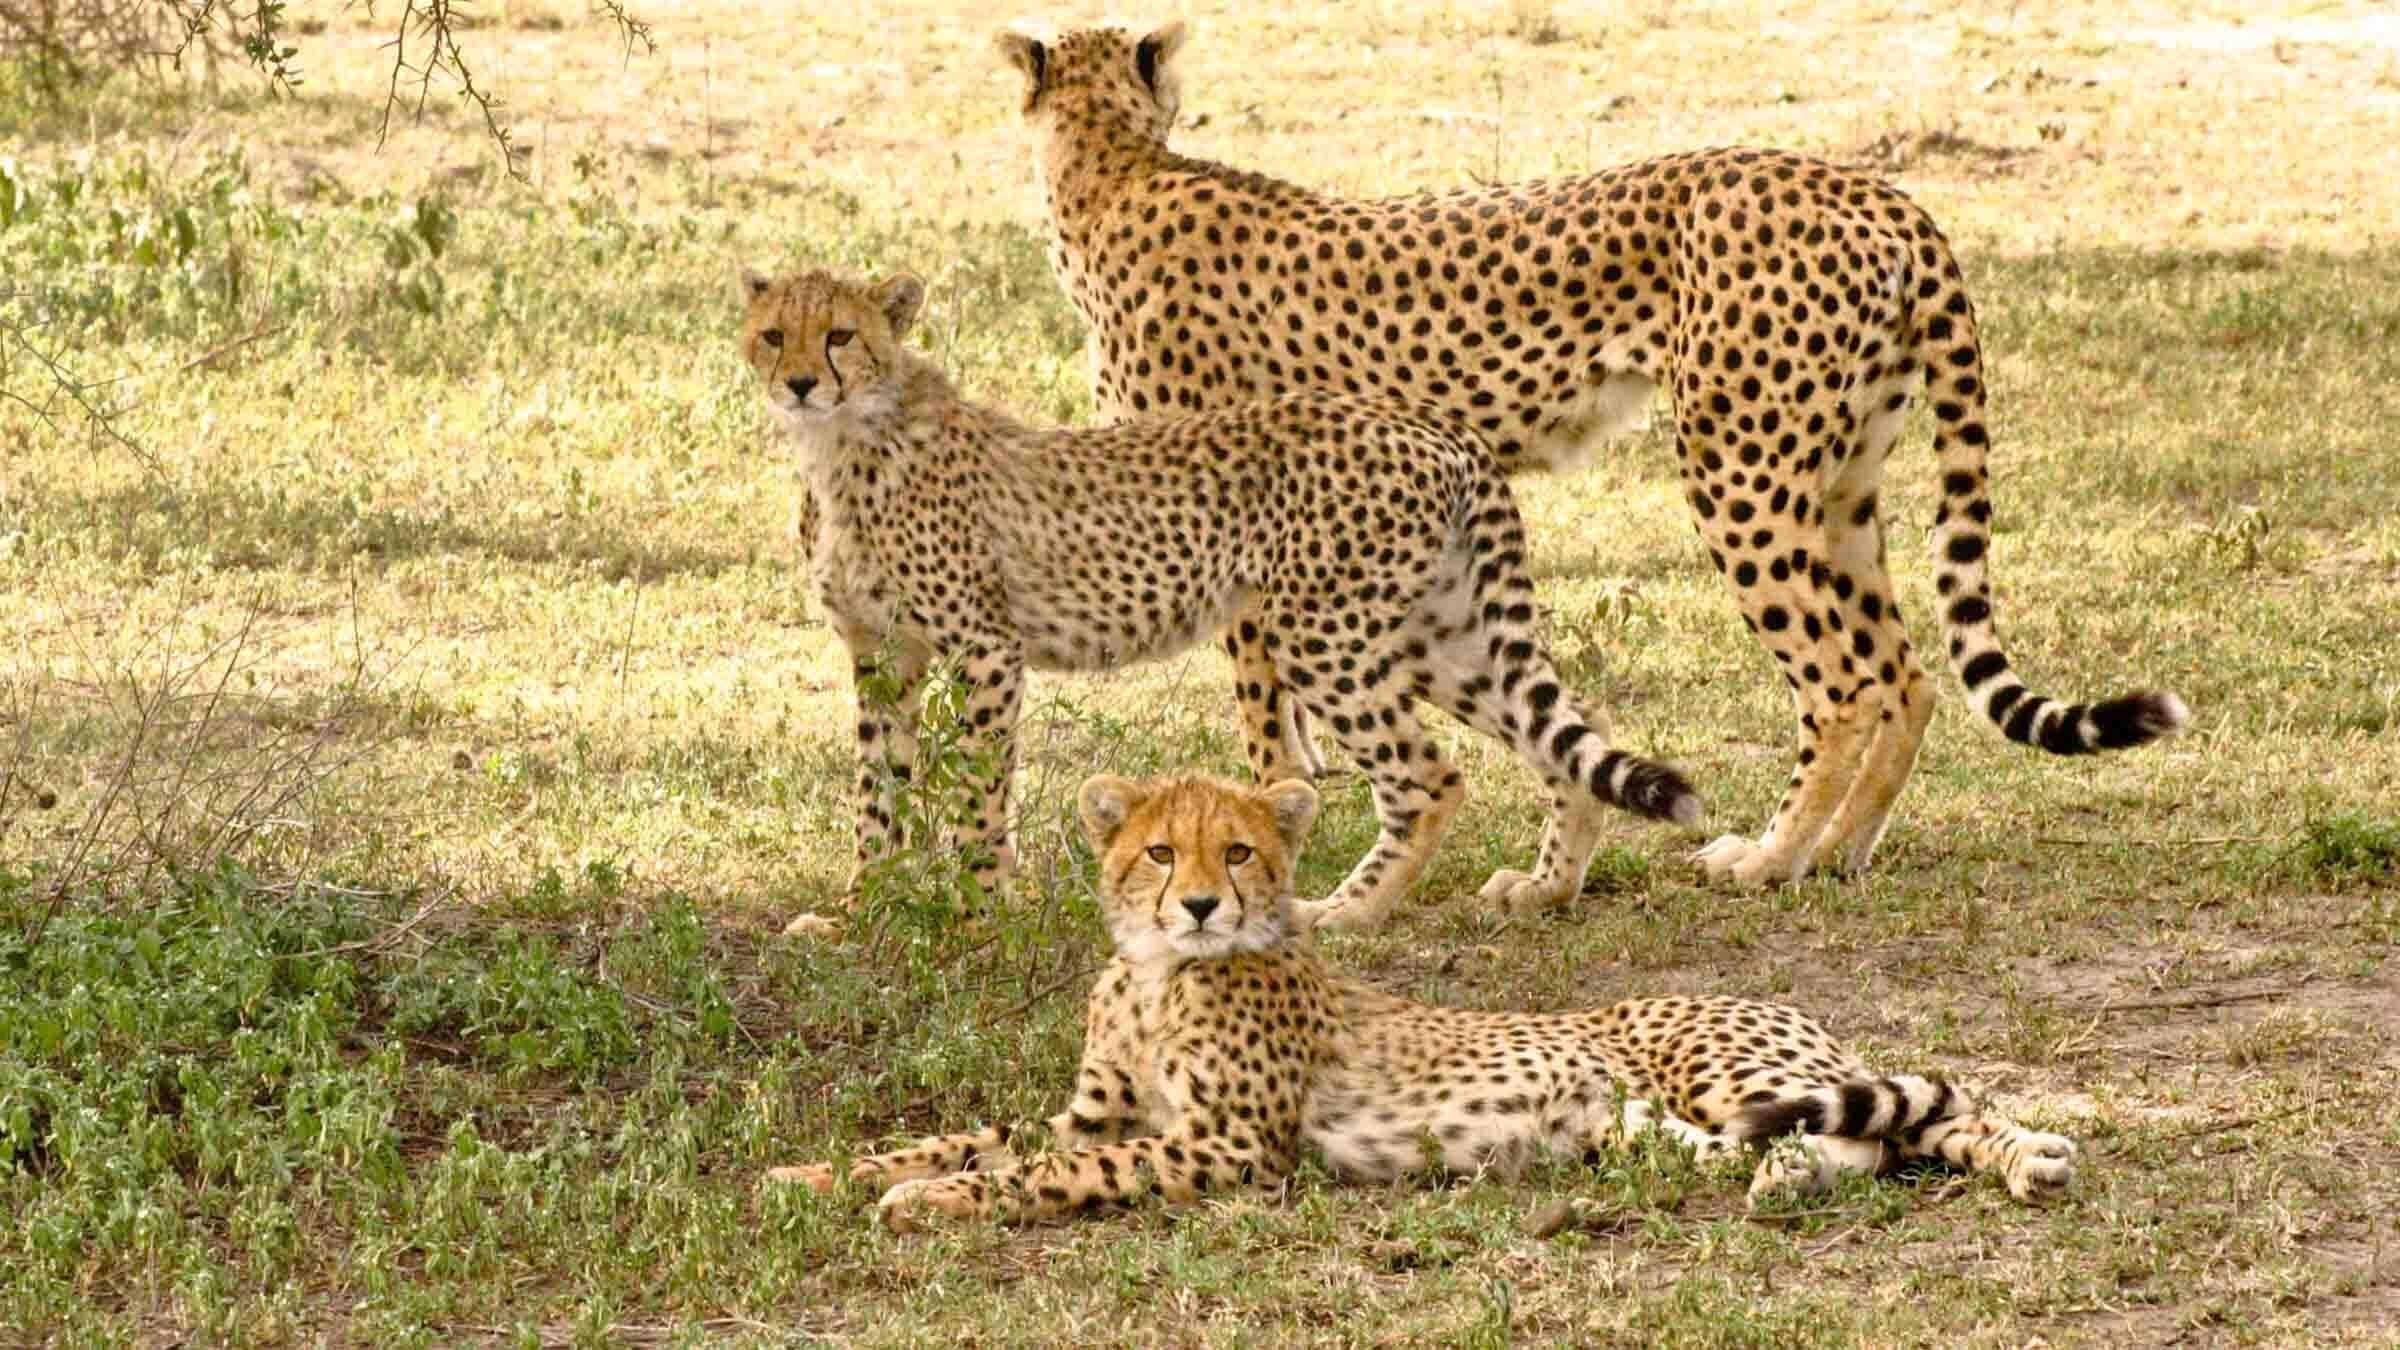 Serengeti Speed Queen backdrop